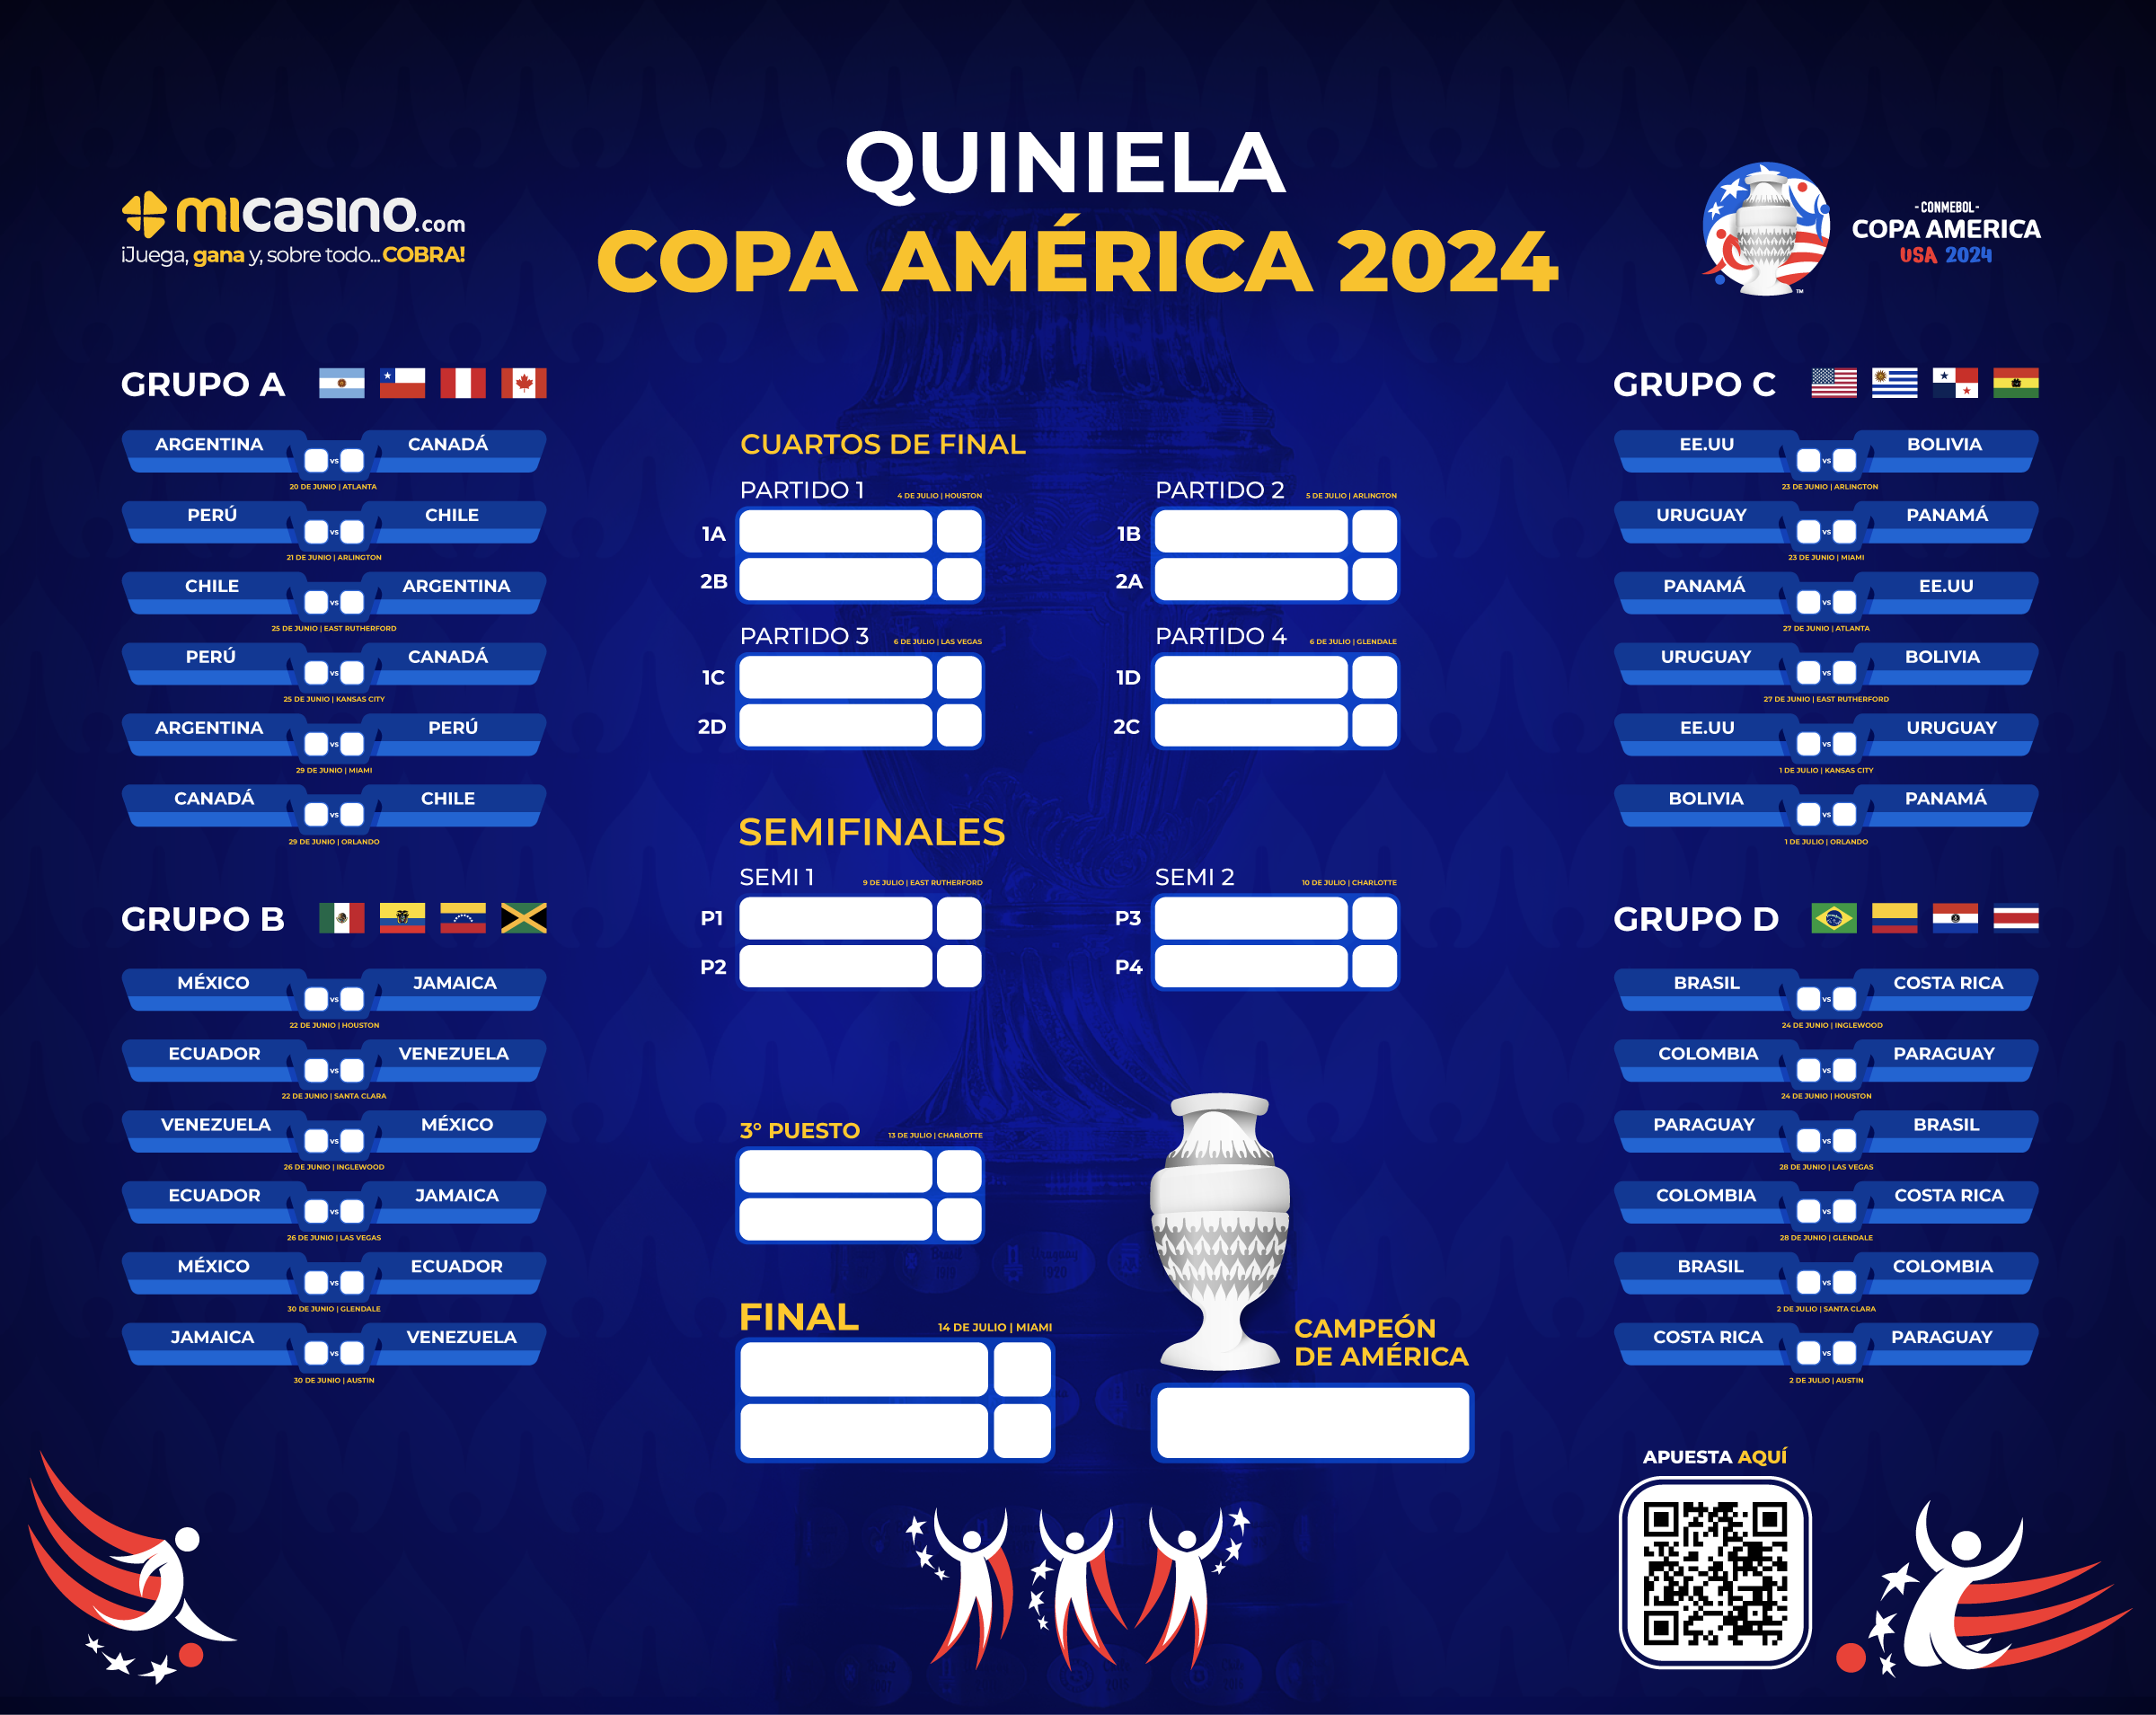 Quiniela Copa America 2024 descargala gratis en nuestra casa de apuesta